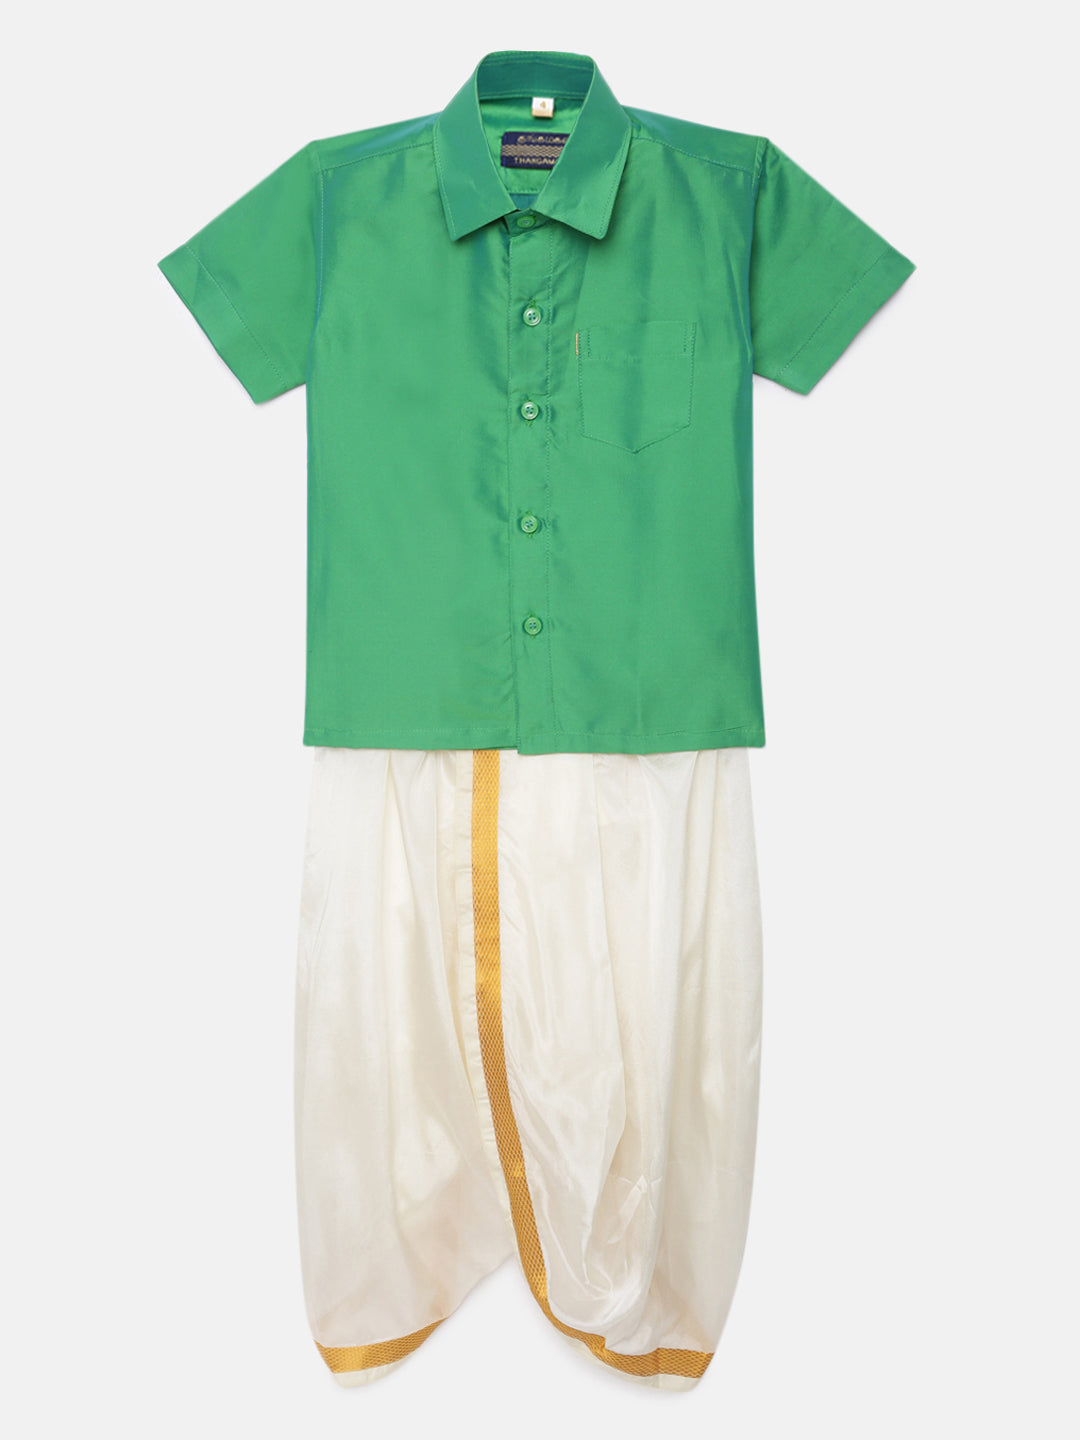 18. Boys Panjagajam & Shirt Set